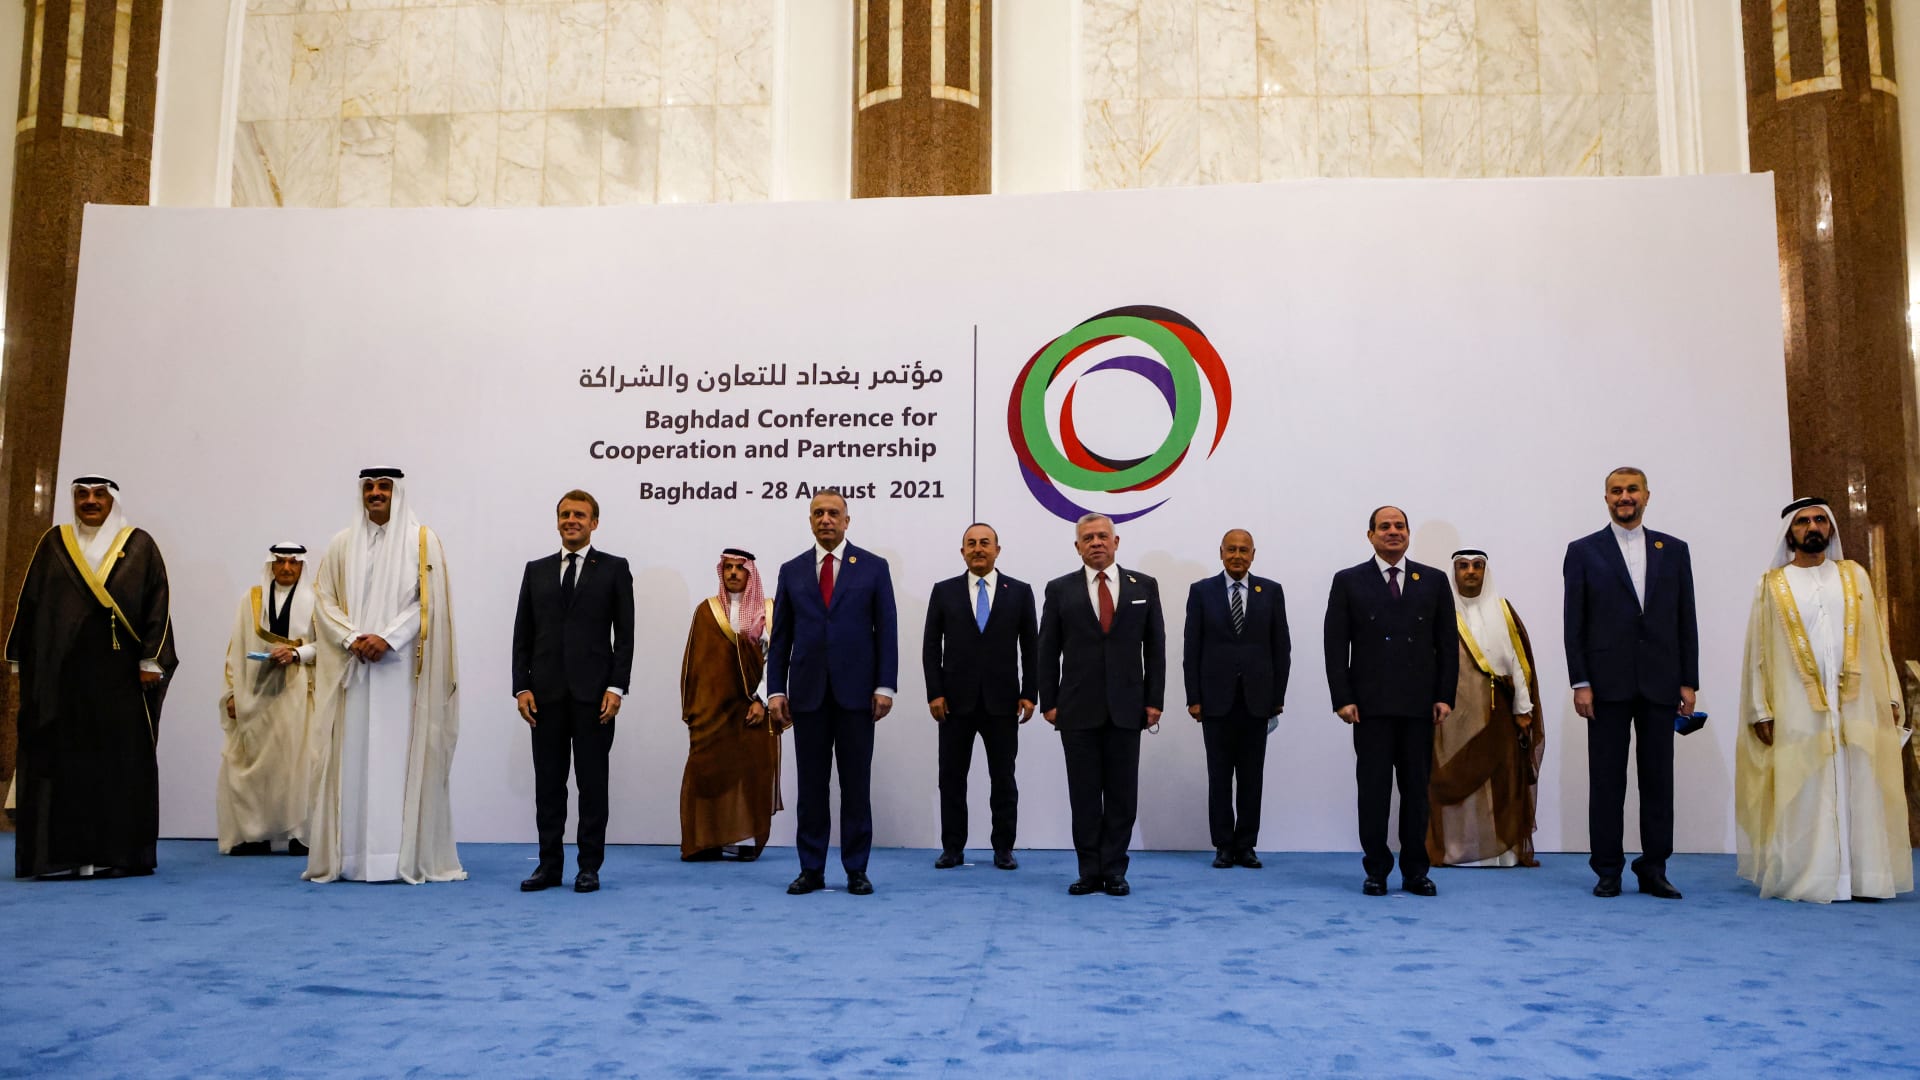 صورة جماعية لقادة دول الجوار والصديقة للعراق خلال قمة مؤتمر بغداد